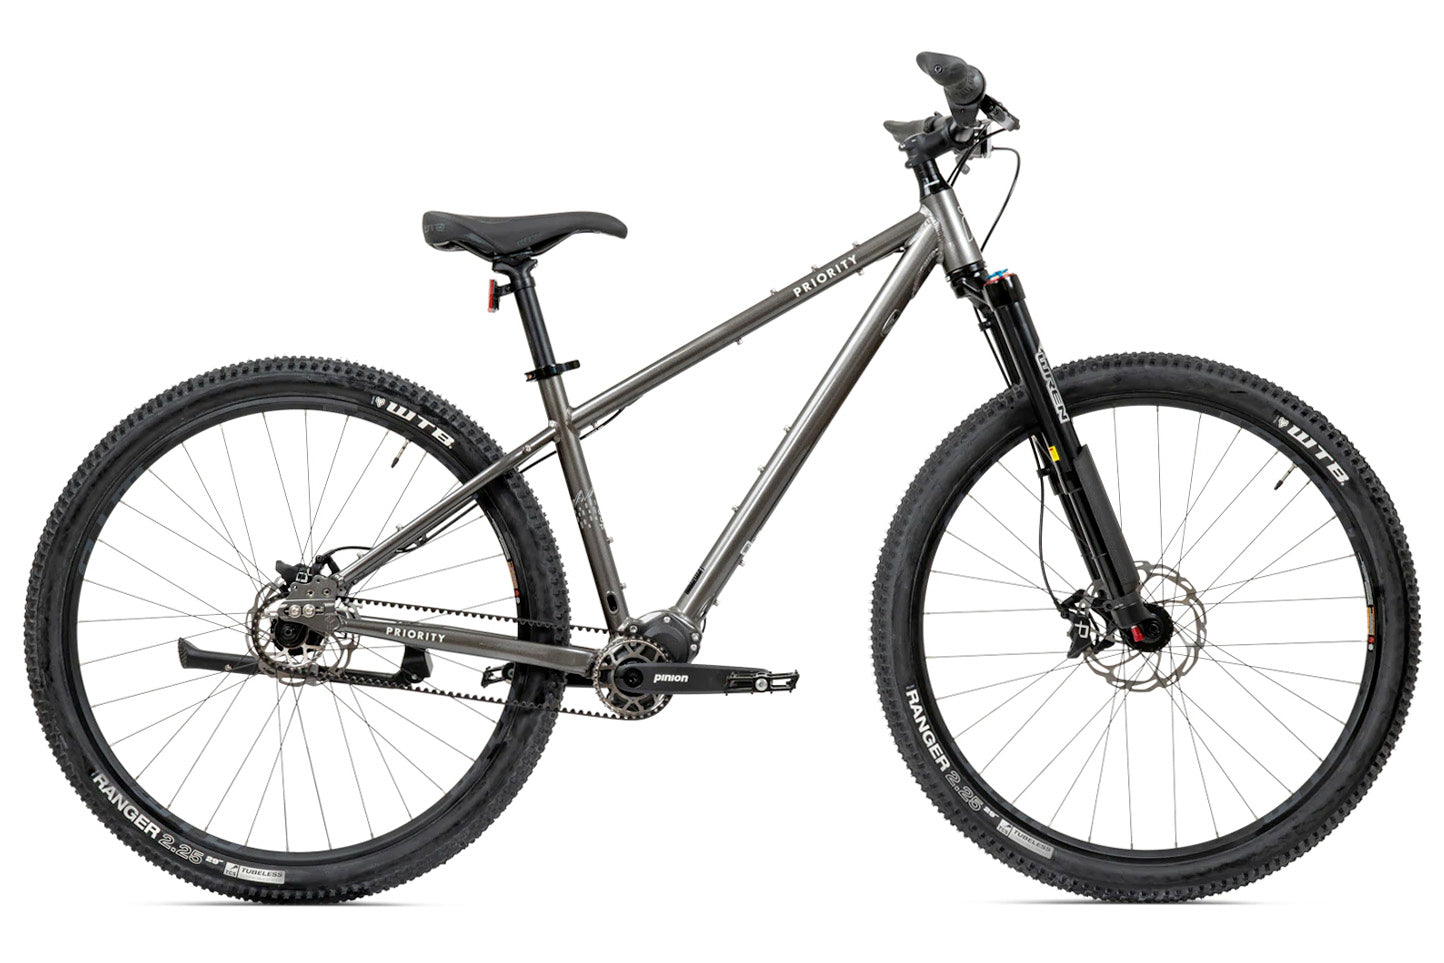 PRIORITY 600X ADVENTURE – Priority Bicycles